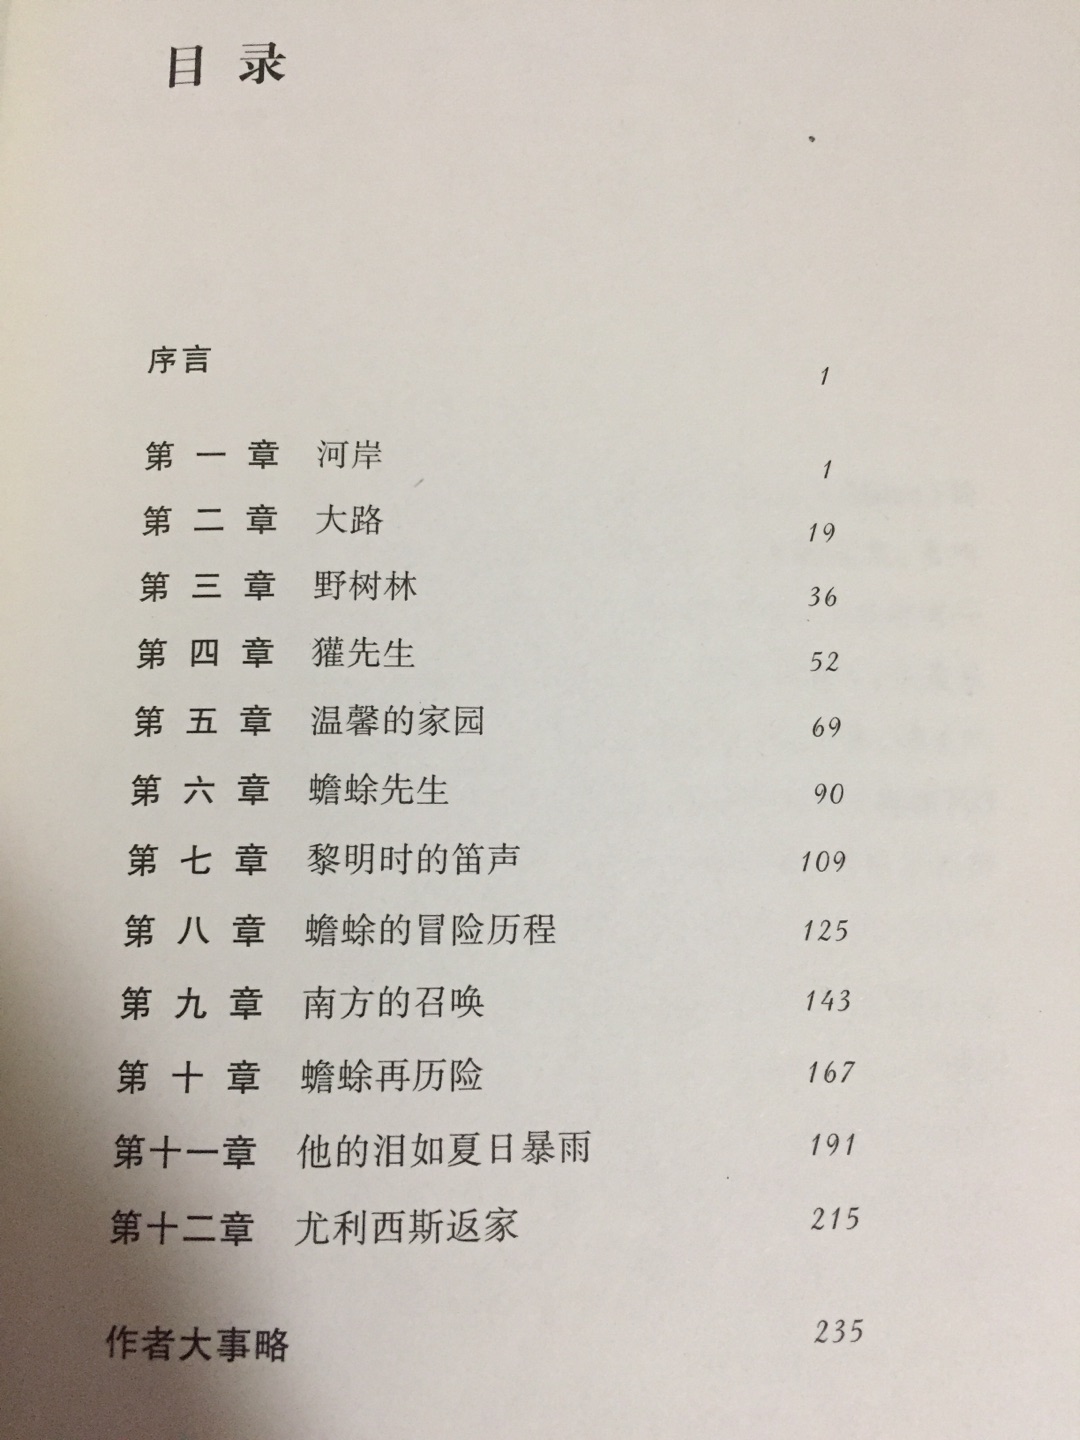 看中译林出版社的全译本买的，希望小朋友喜欢看。物流一如即往得快。